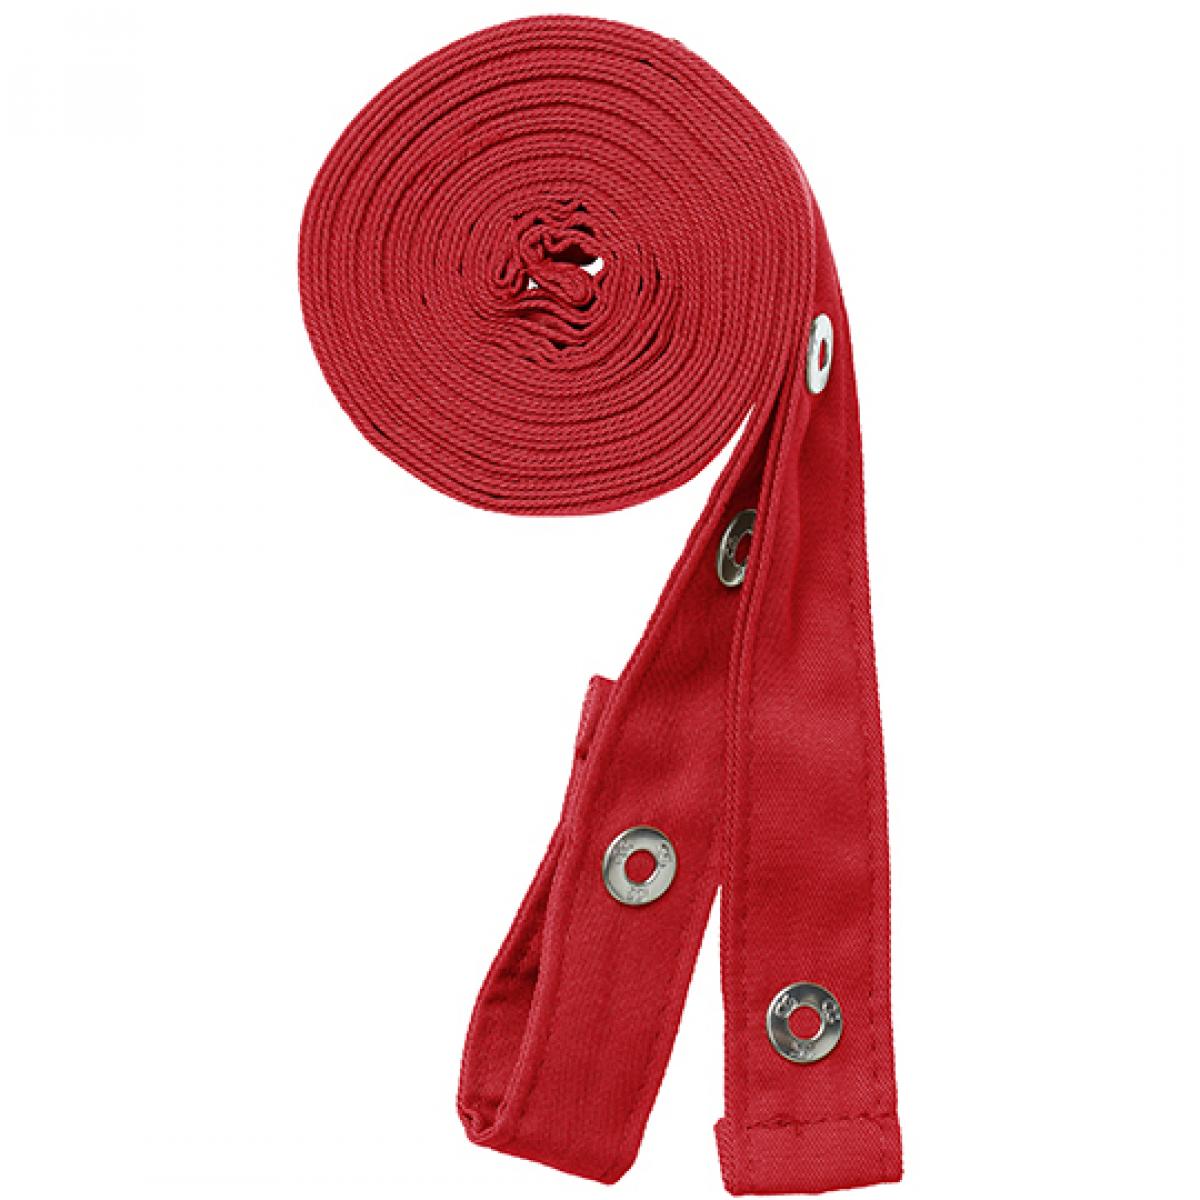 Hersteller: CG Workwear Herstellernummer: 42128 Artikelbezeichnung: Pizzone Classic Strap Set Druckknopf Farbe: Red